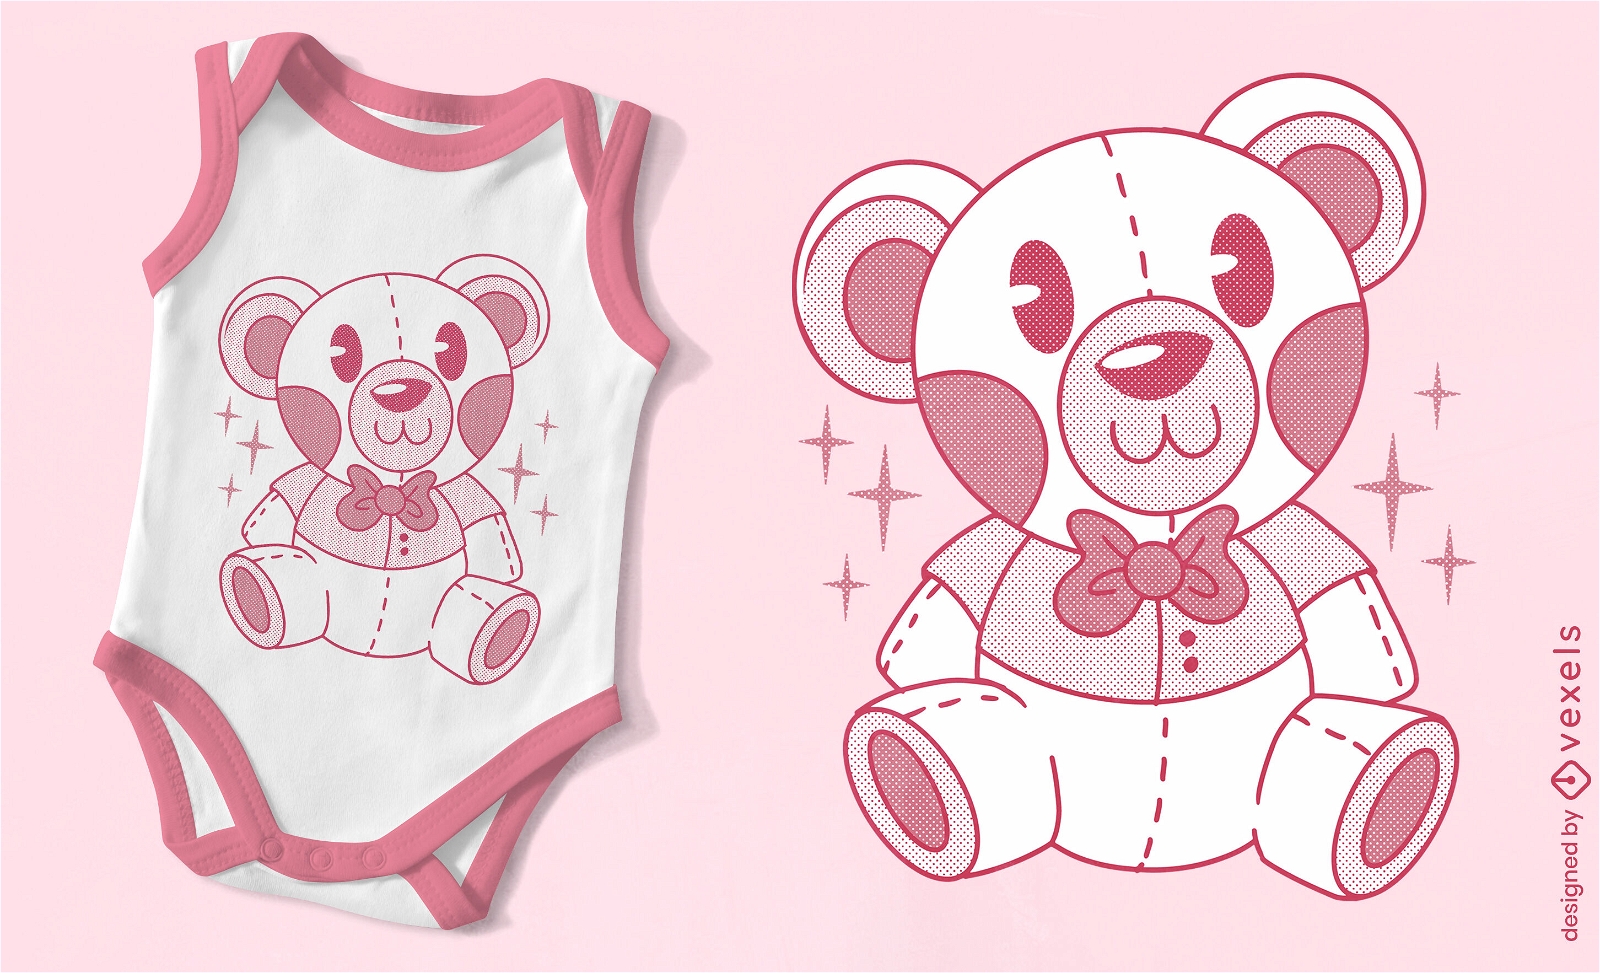 Cute monochromatic teddy bear t-shirt design